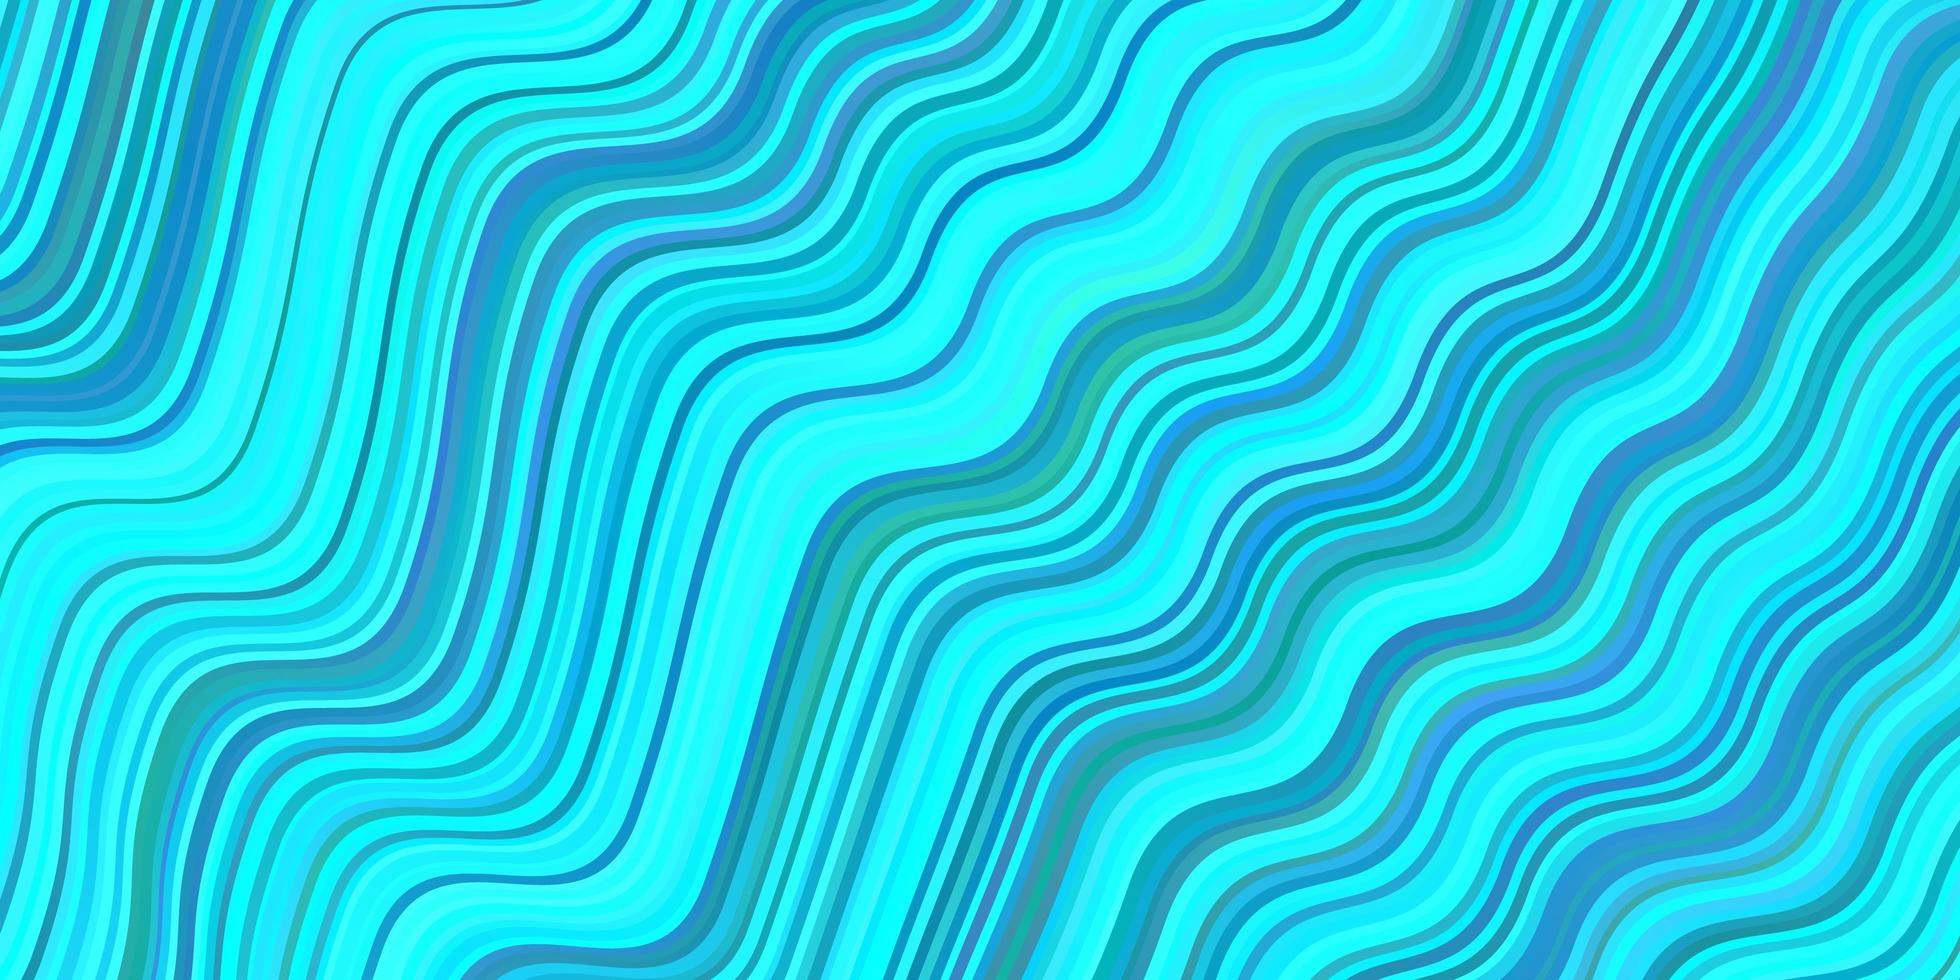 sfondo vettoriale azzurro con linee curve.